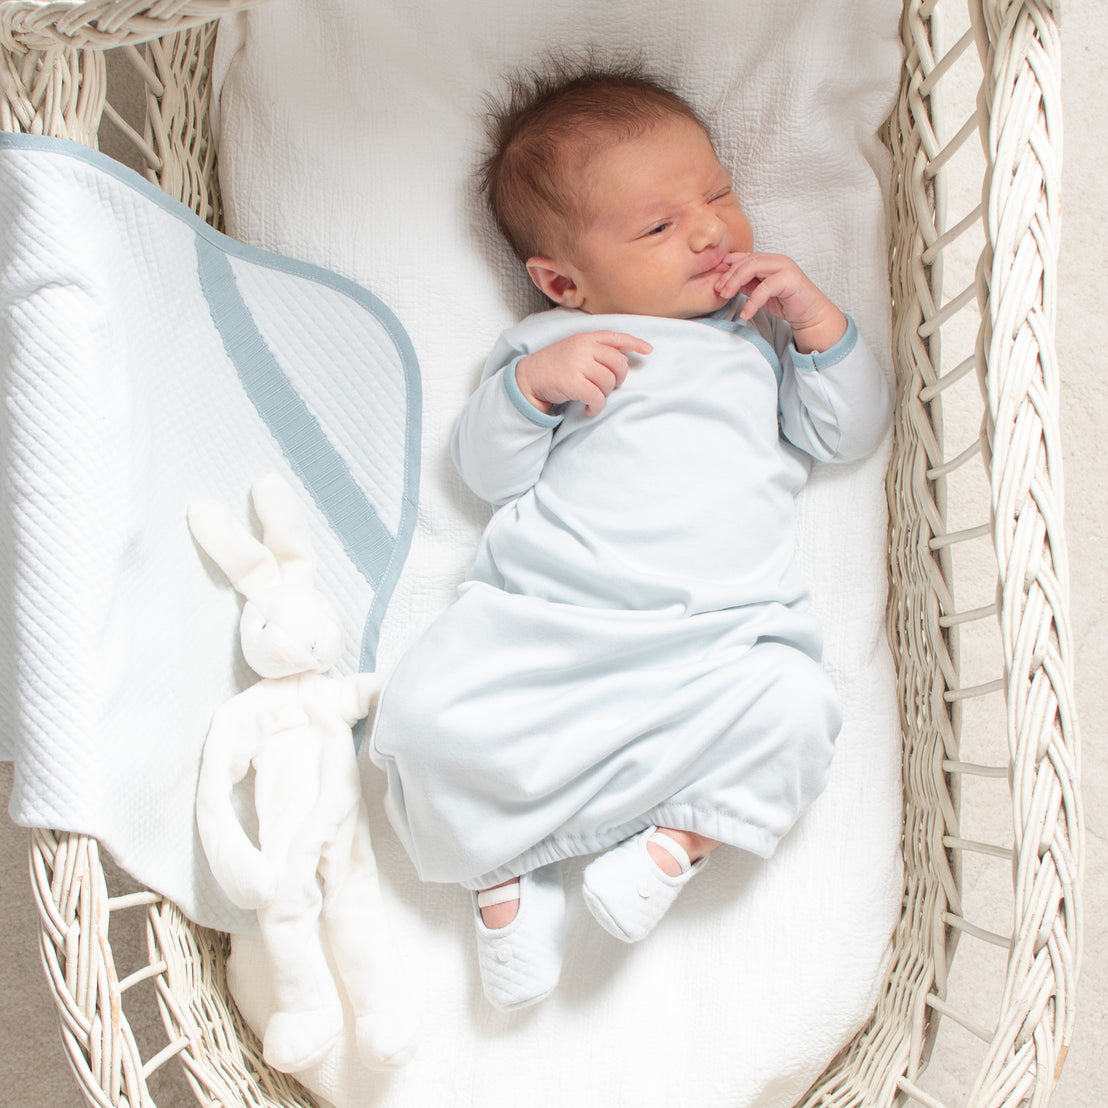 Aiden Newborn Gift Set - Save 10%